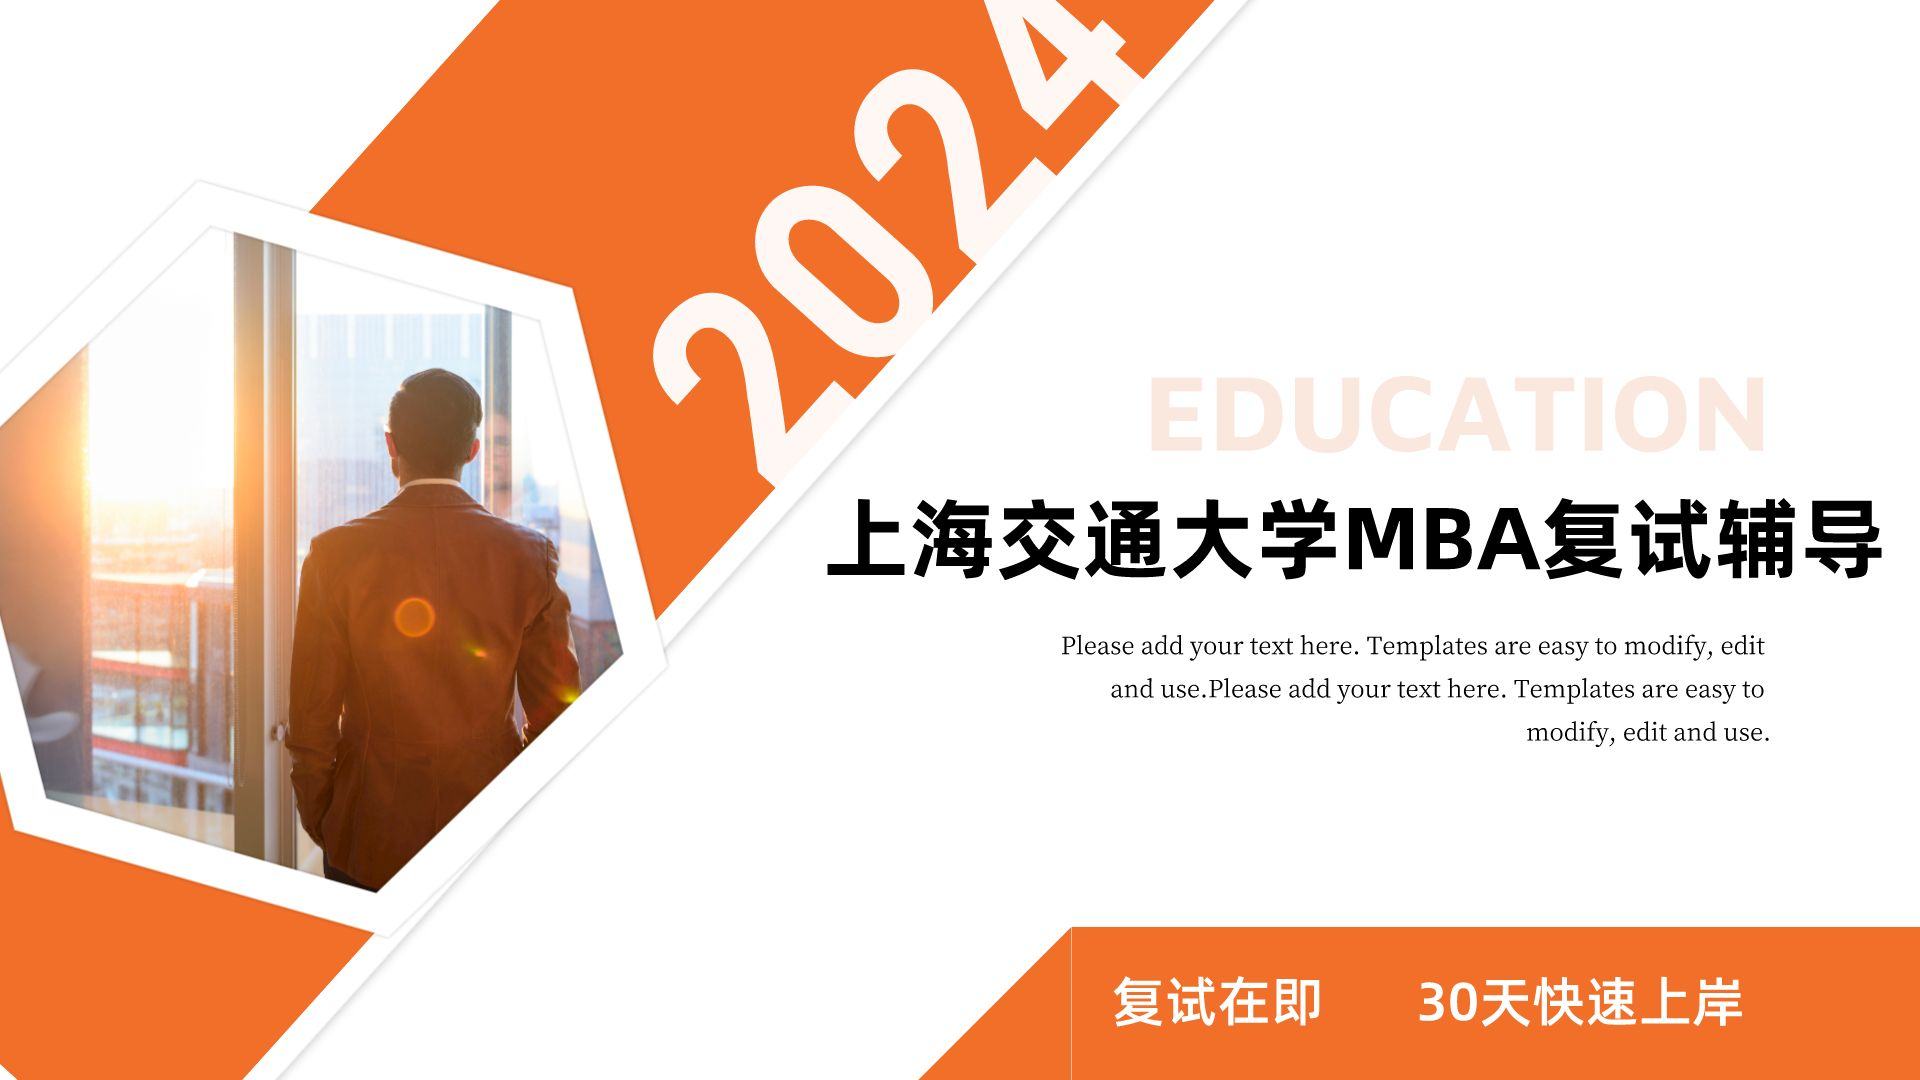 上海交通大学MBA复试辅导